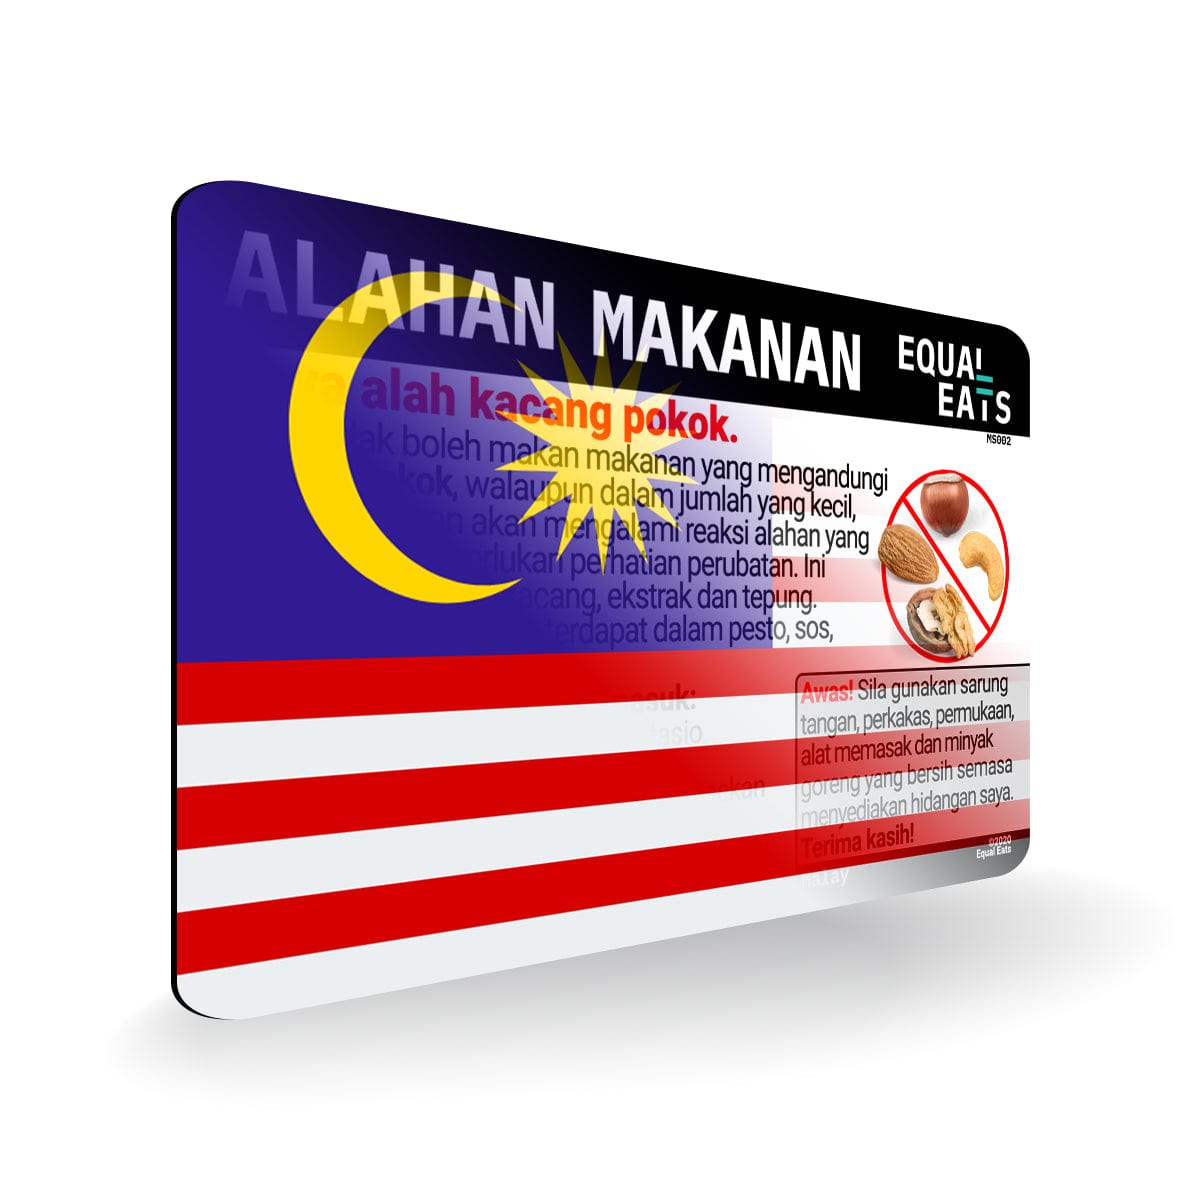 Malay Tree Nut Allergy Card